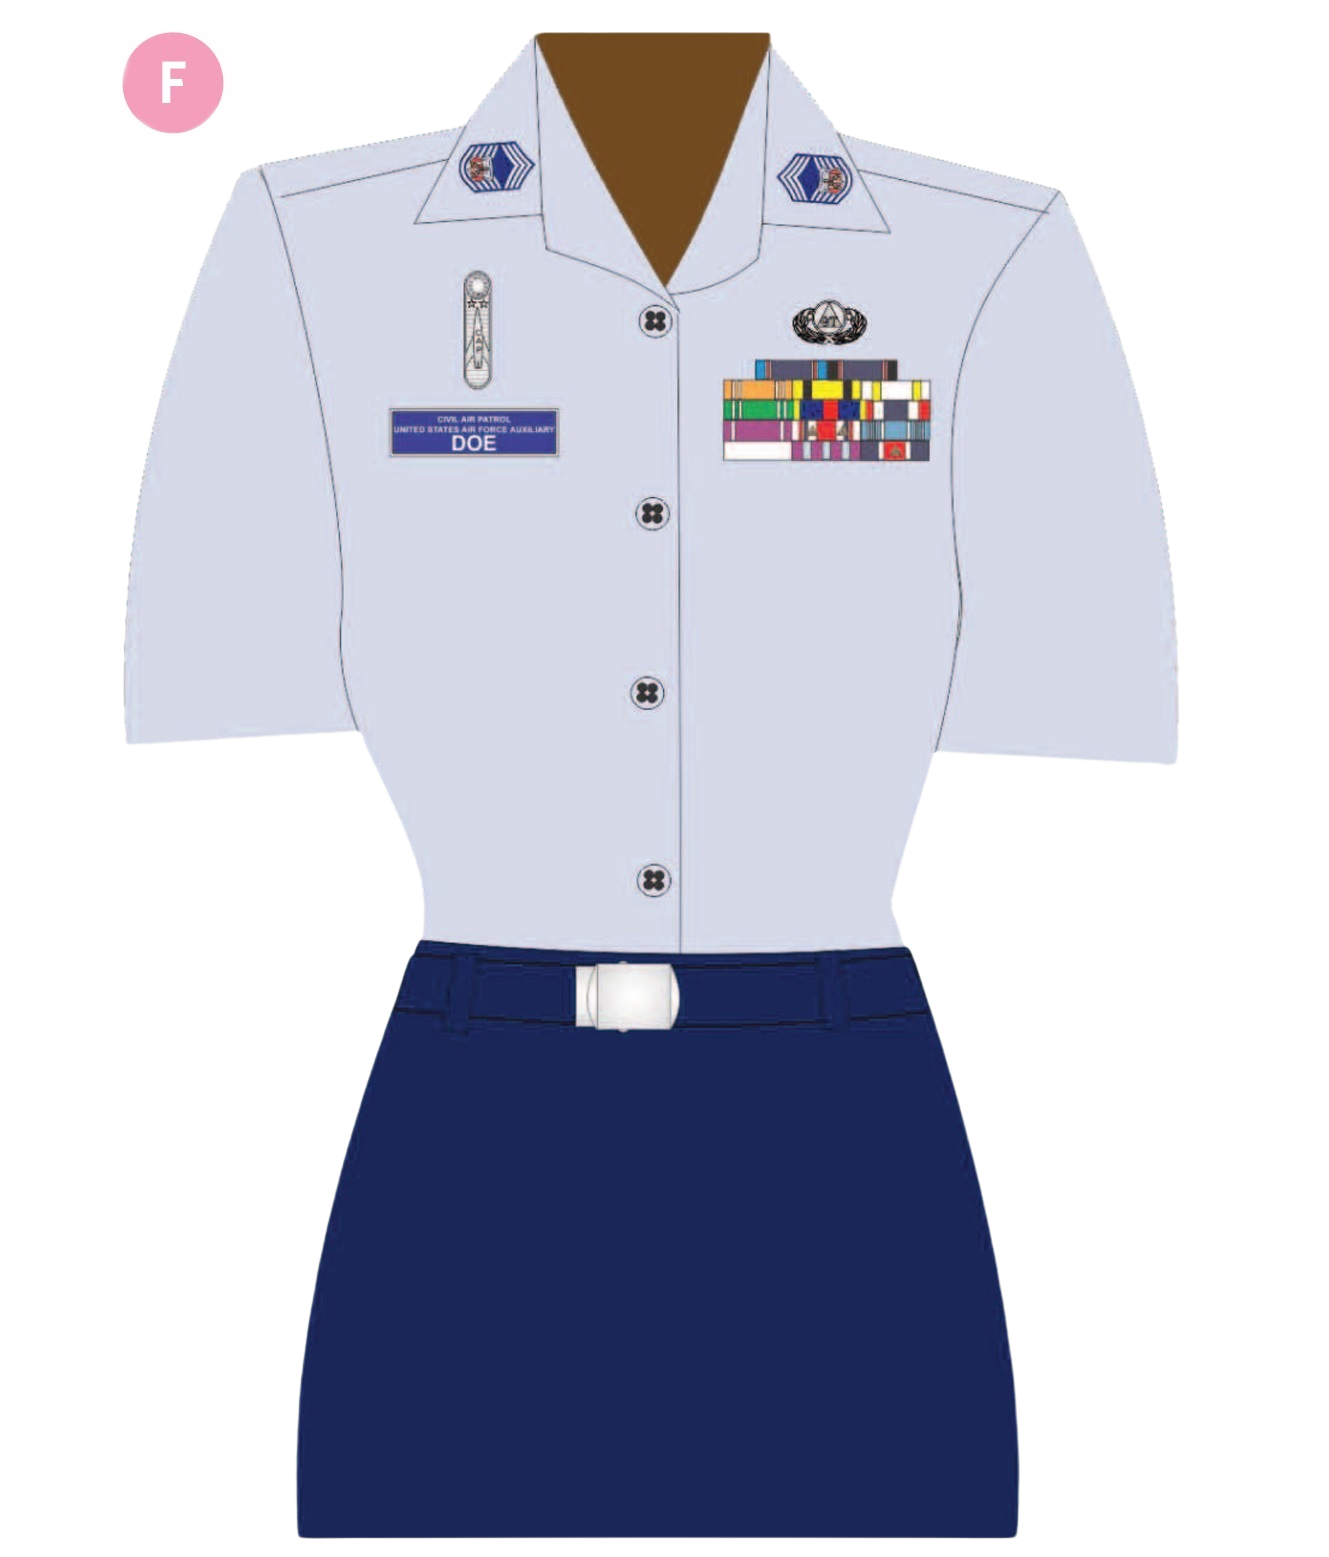 Air Force Officer Flight Cap, Headgear, Military